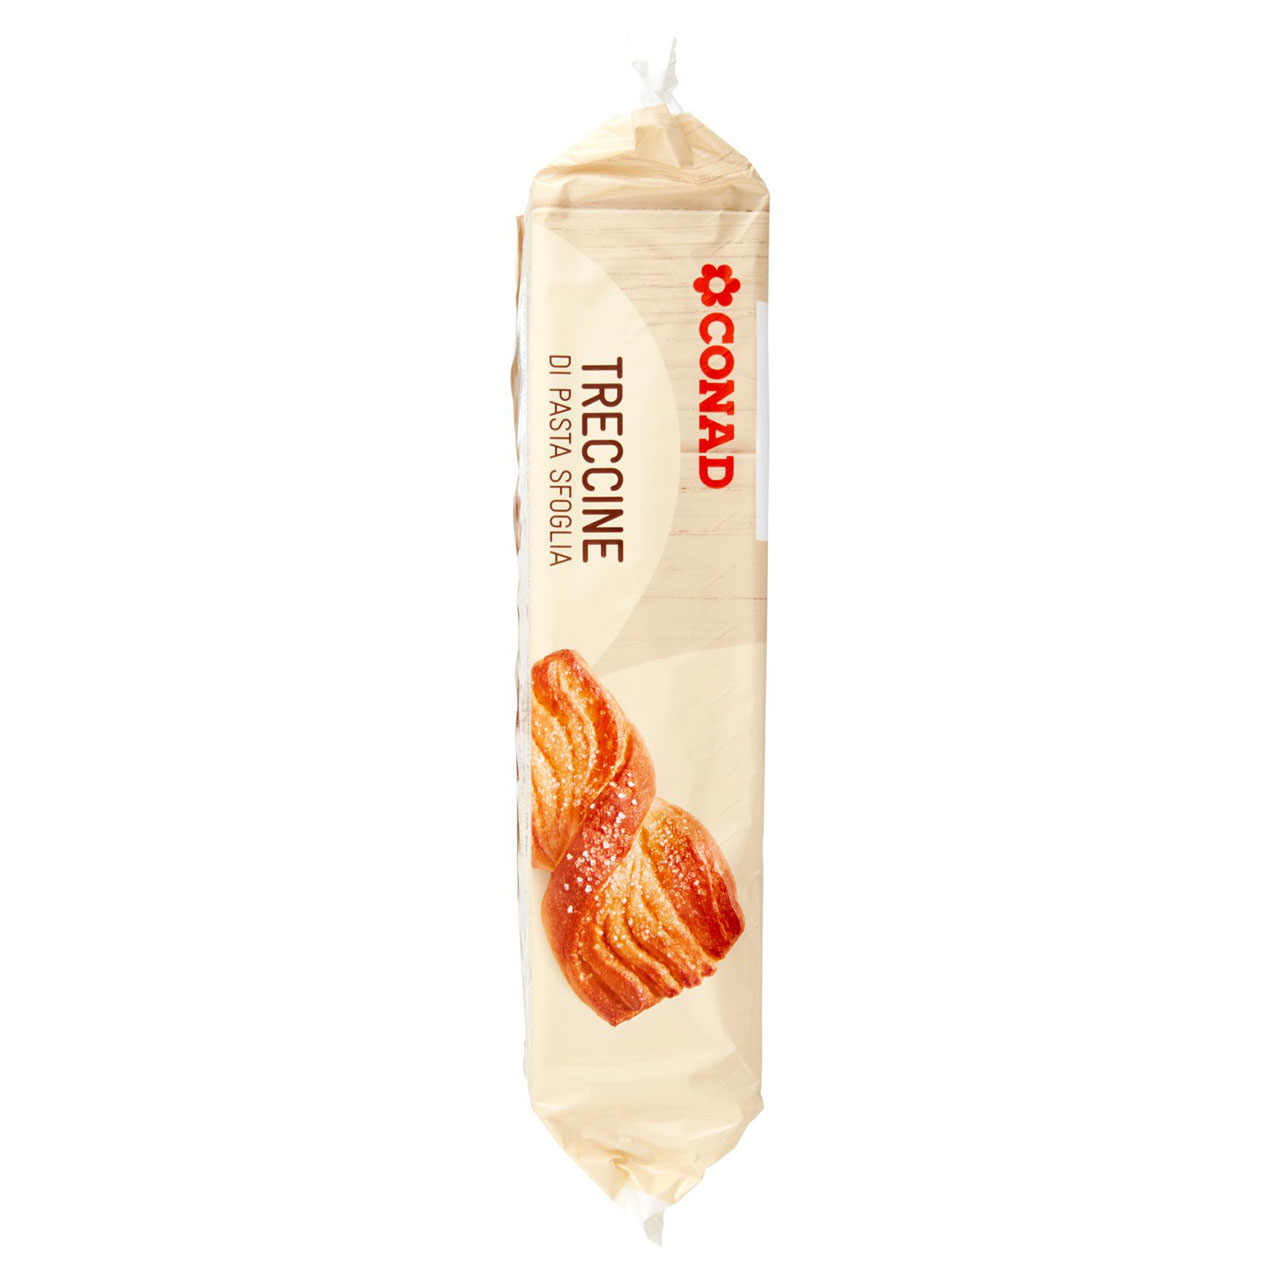 Treccine di Pasta Sfoglia 252 g Conad online